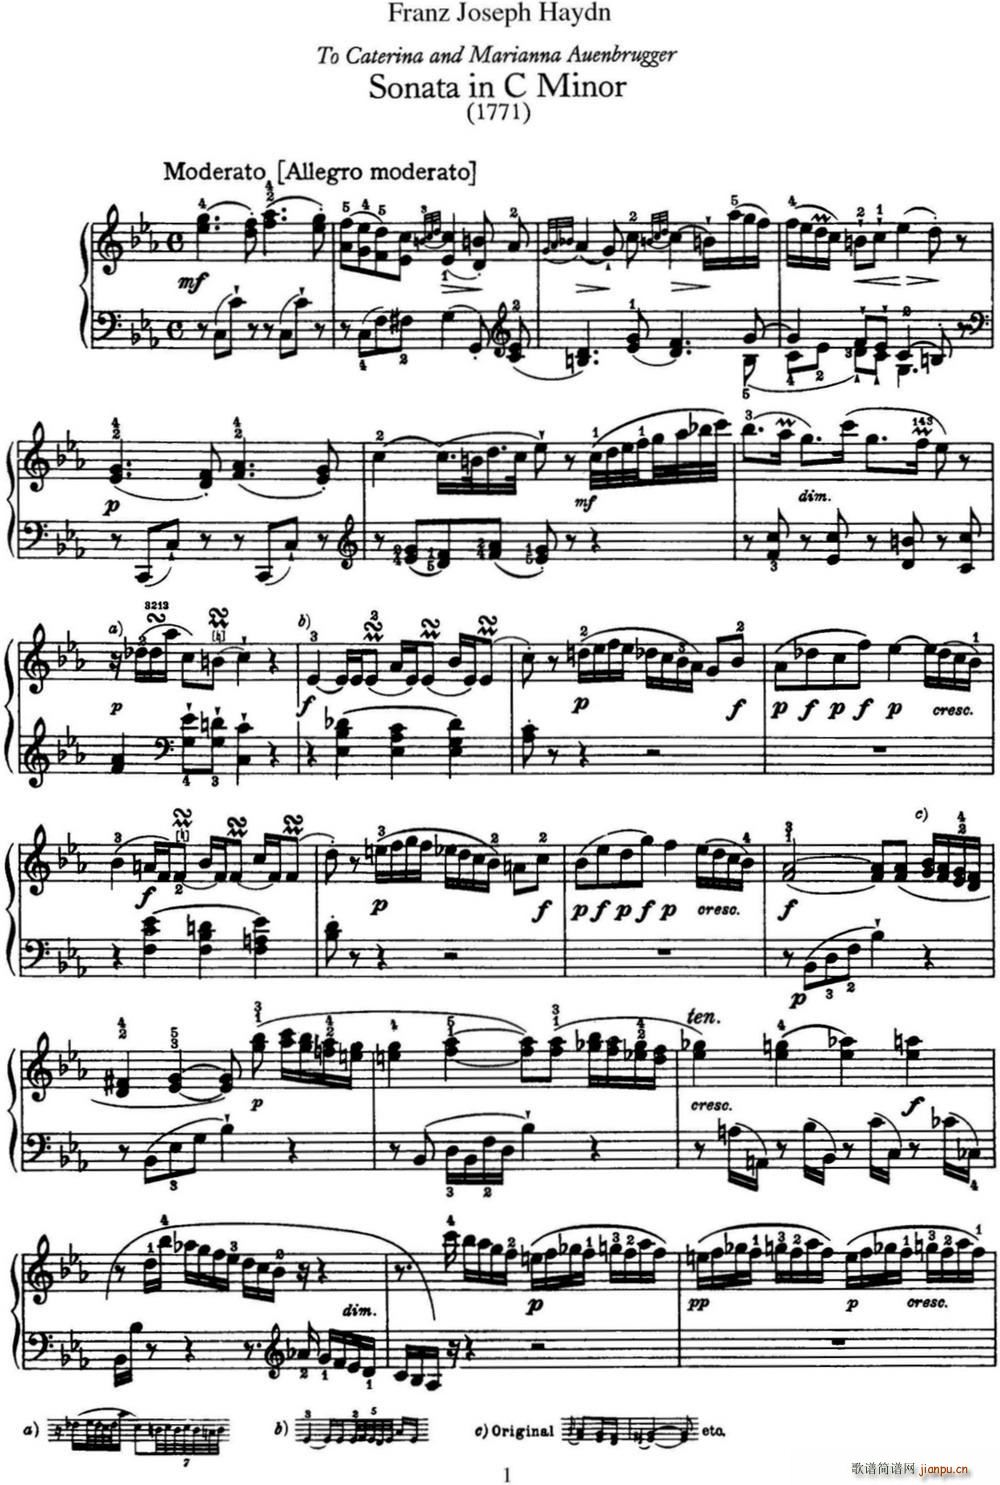   Hob XVI 20 in C minor()1